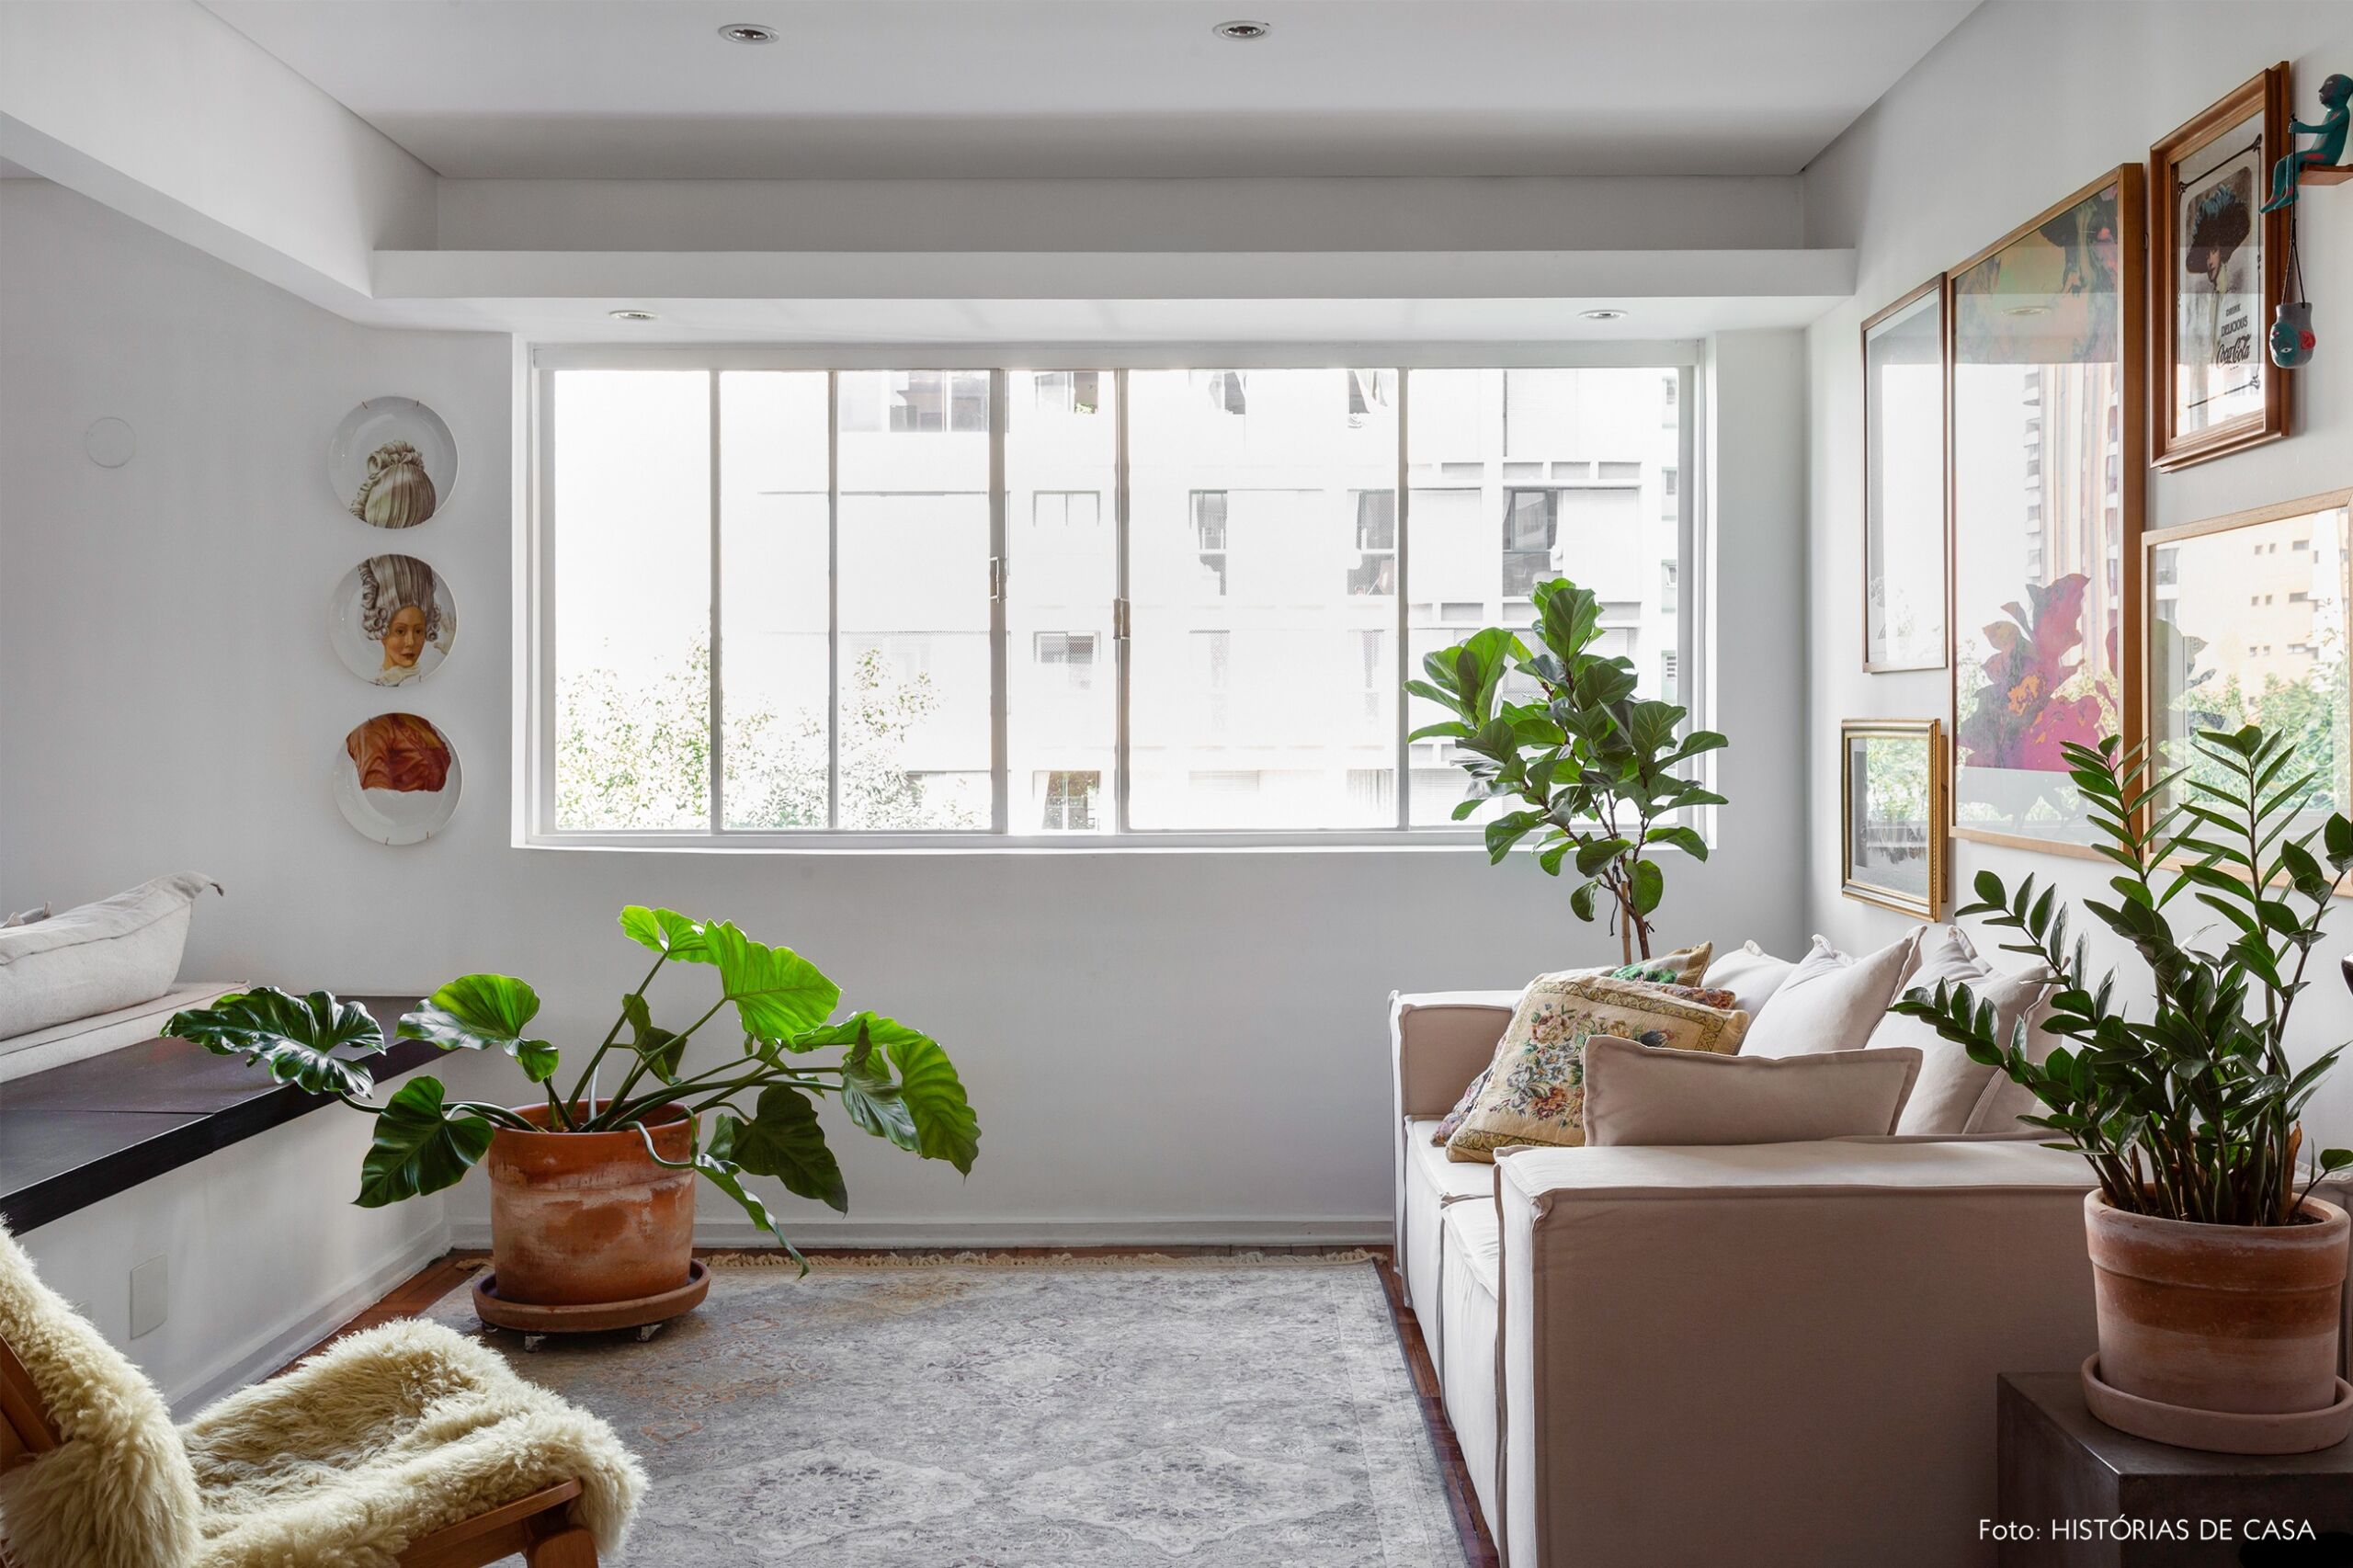 Apartamento alugado com ambientes integrados e muitos objetos vintage para uma decoração com personalidade